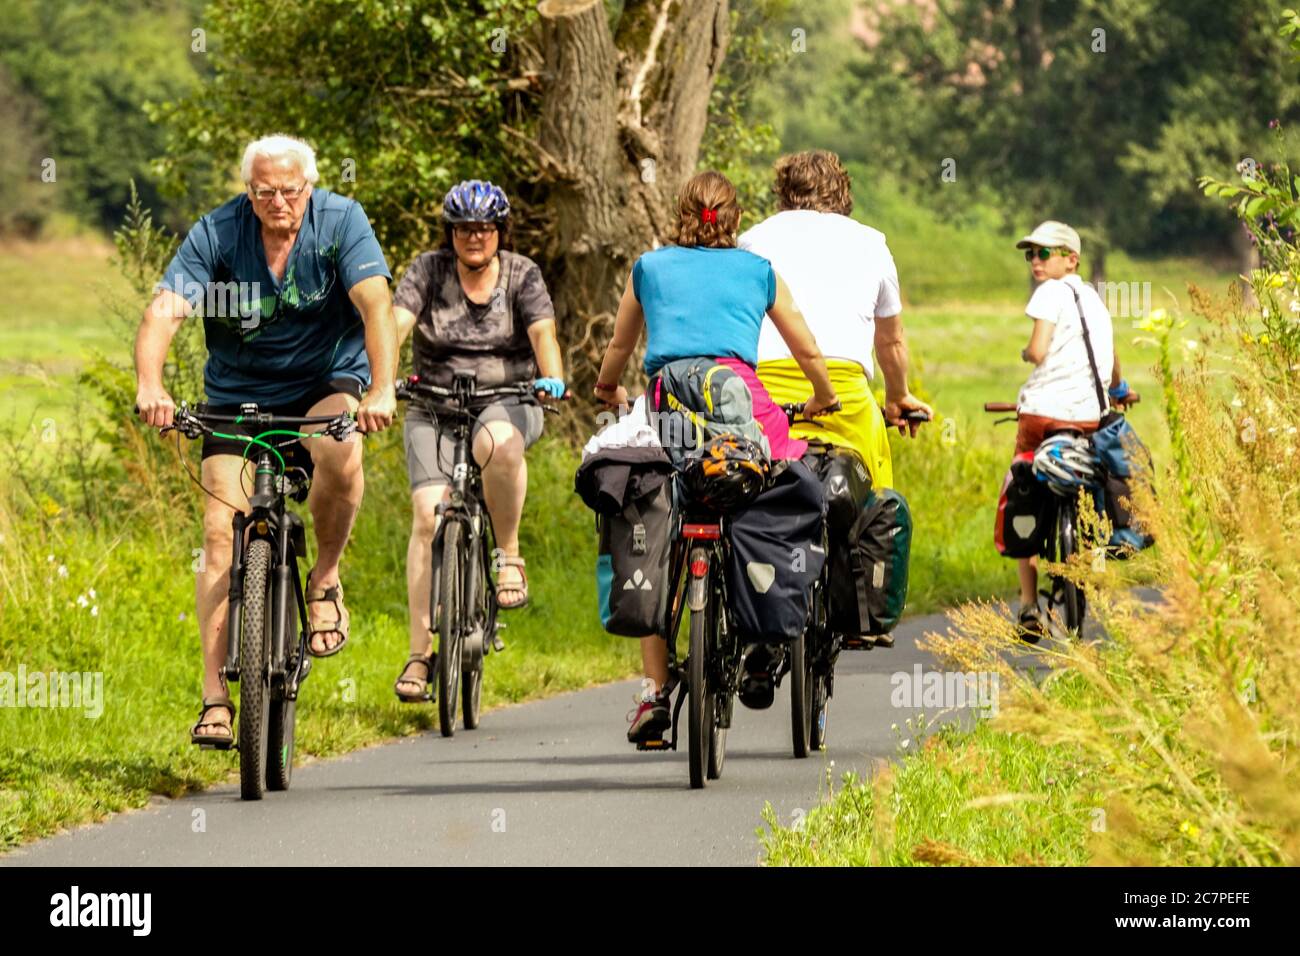 Cyclistes sur l'Elberadweg, un sentier cyclable menant à travers une vallée le long de l'Elbe, les gens aiment le vélo vacances Saxe Allemagne Banque D'Images